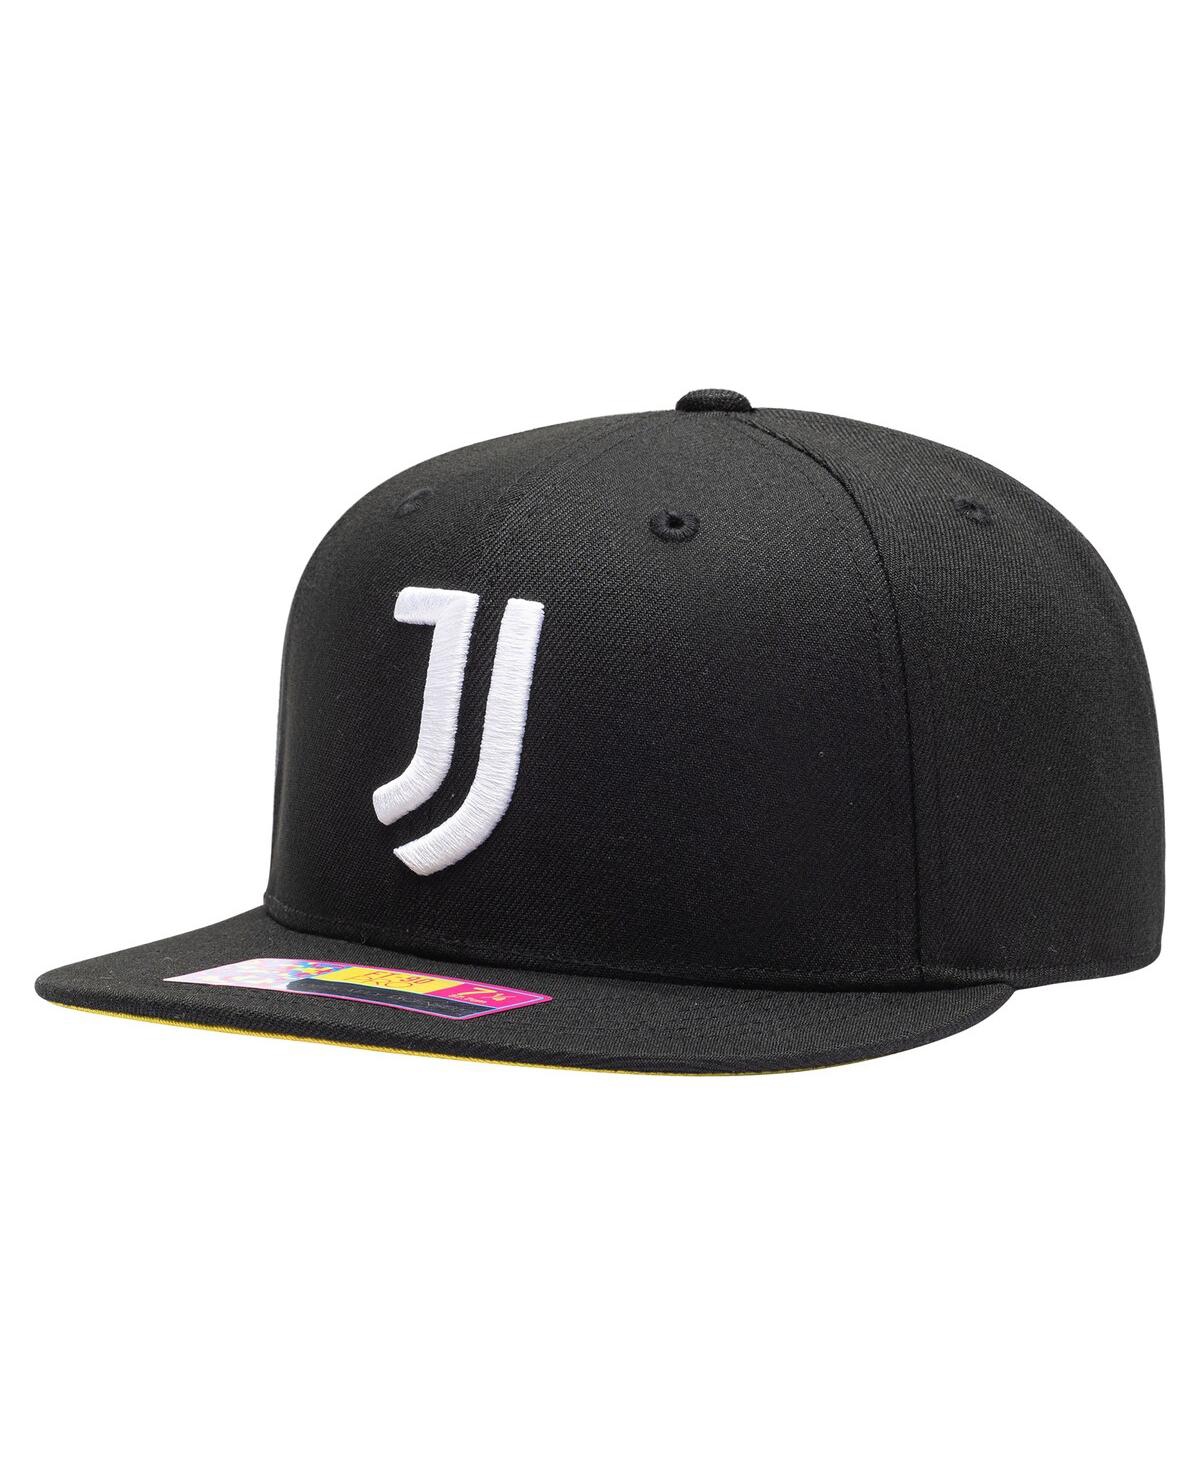 Men's Black Juventus Draft Night Fitted Hat - Black